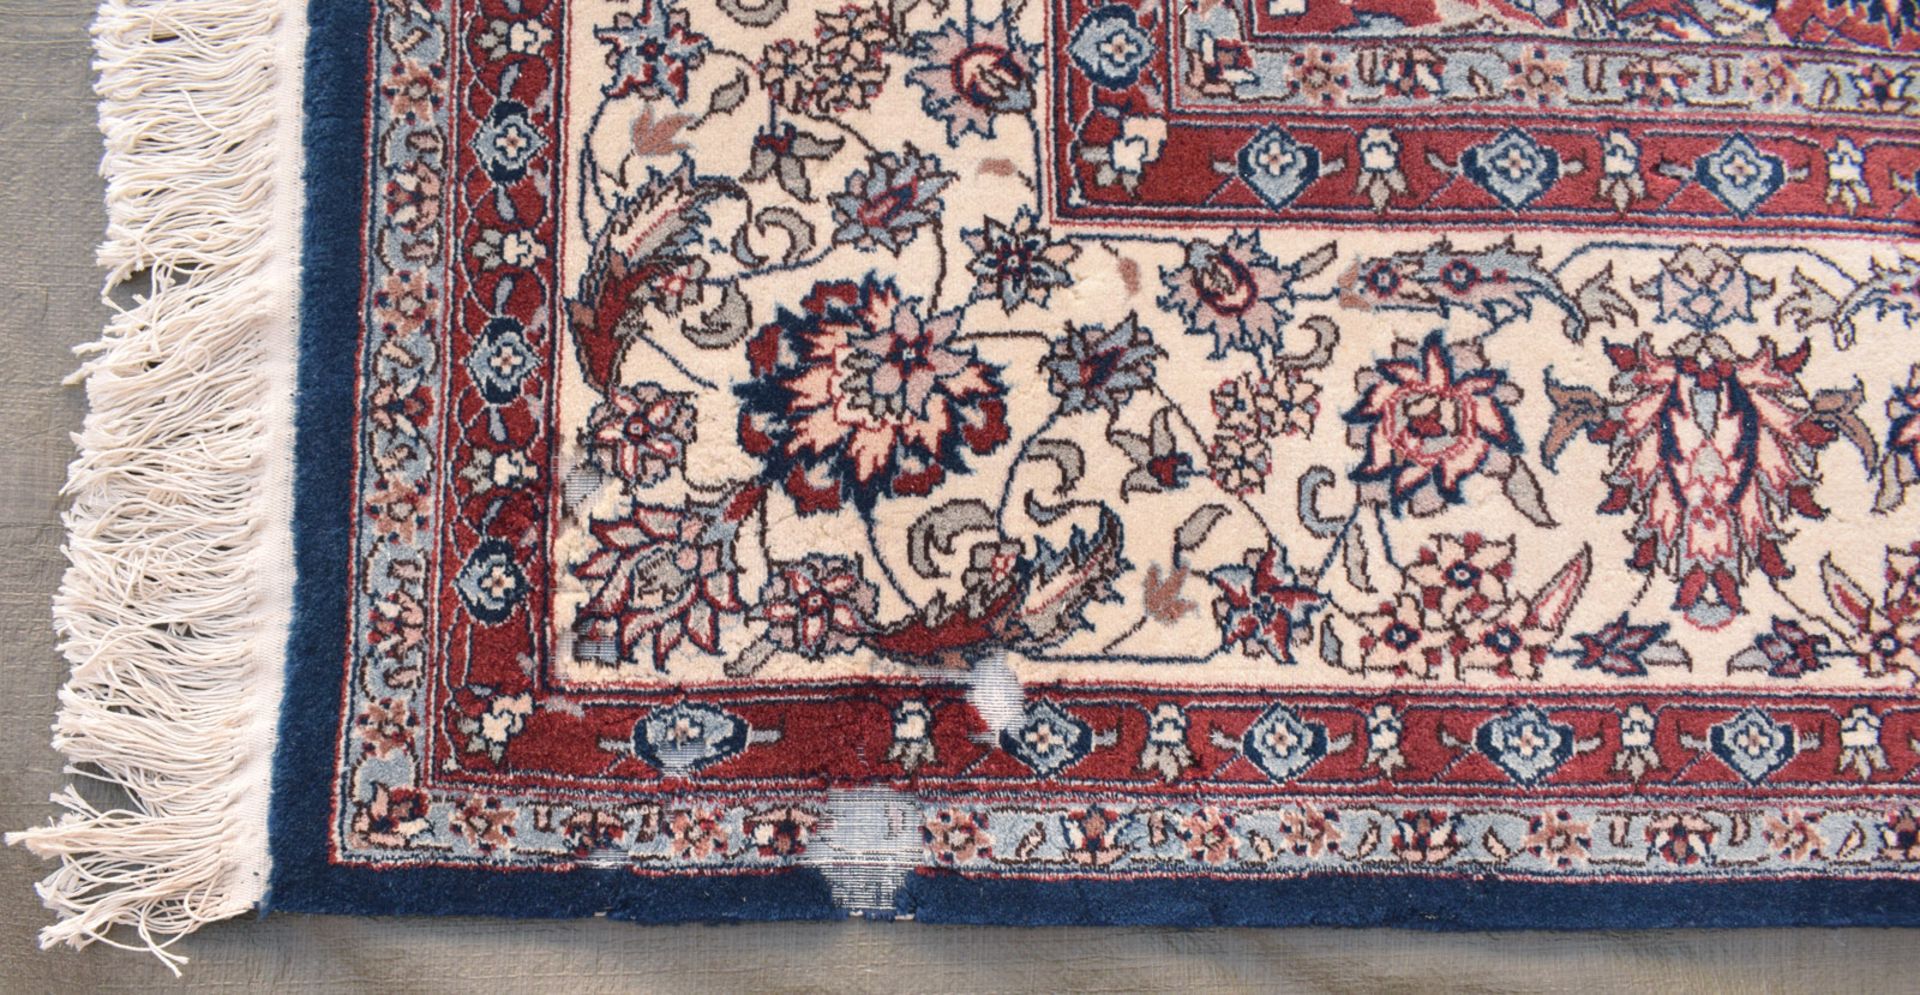 Alter Teppich mit Zentralmedaillon - Bild 2 aus 7